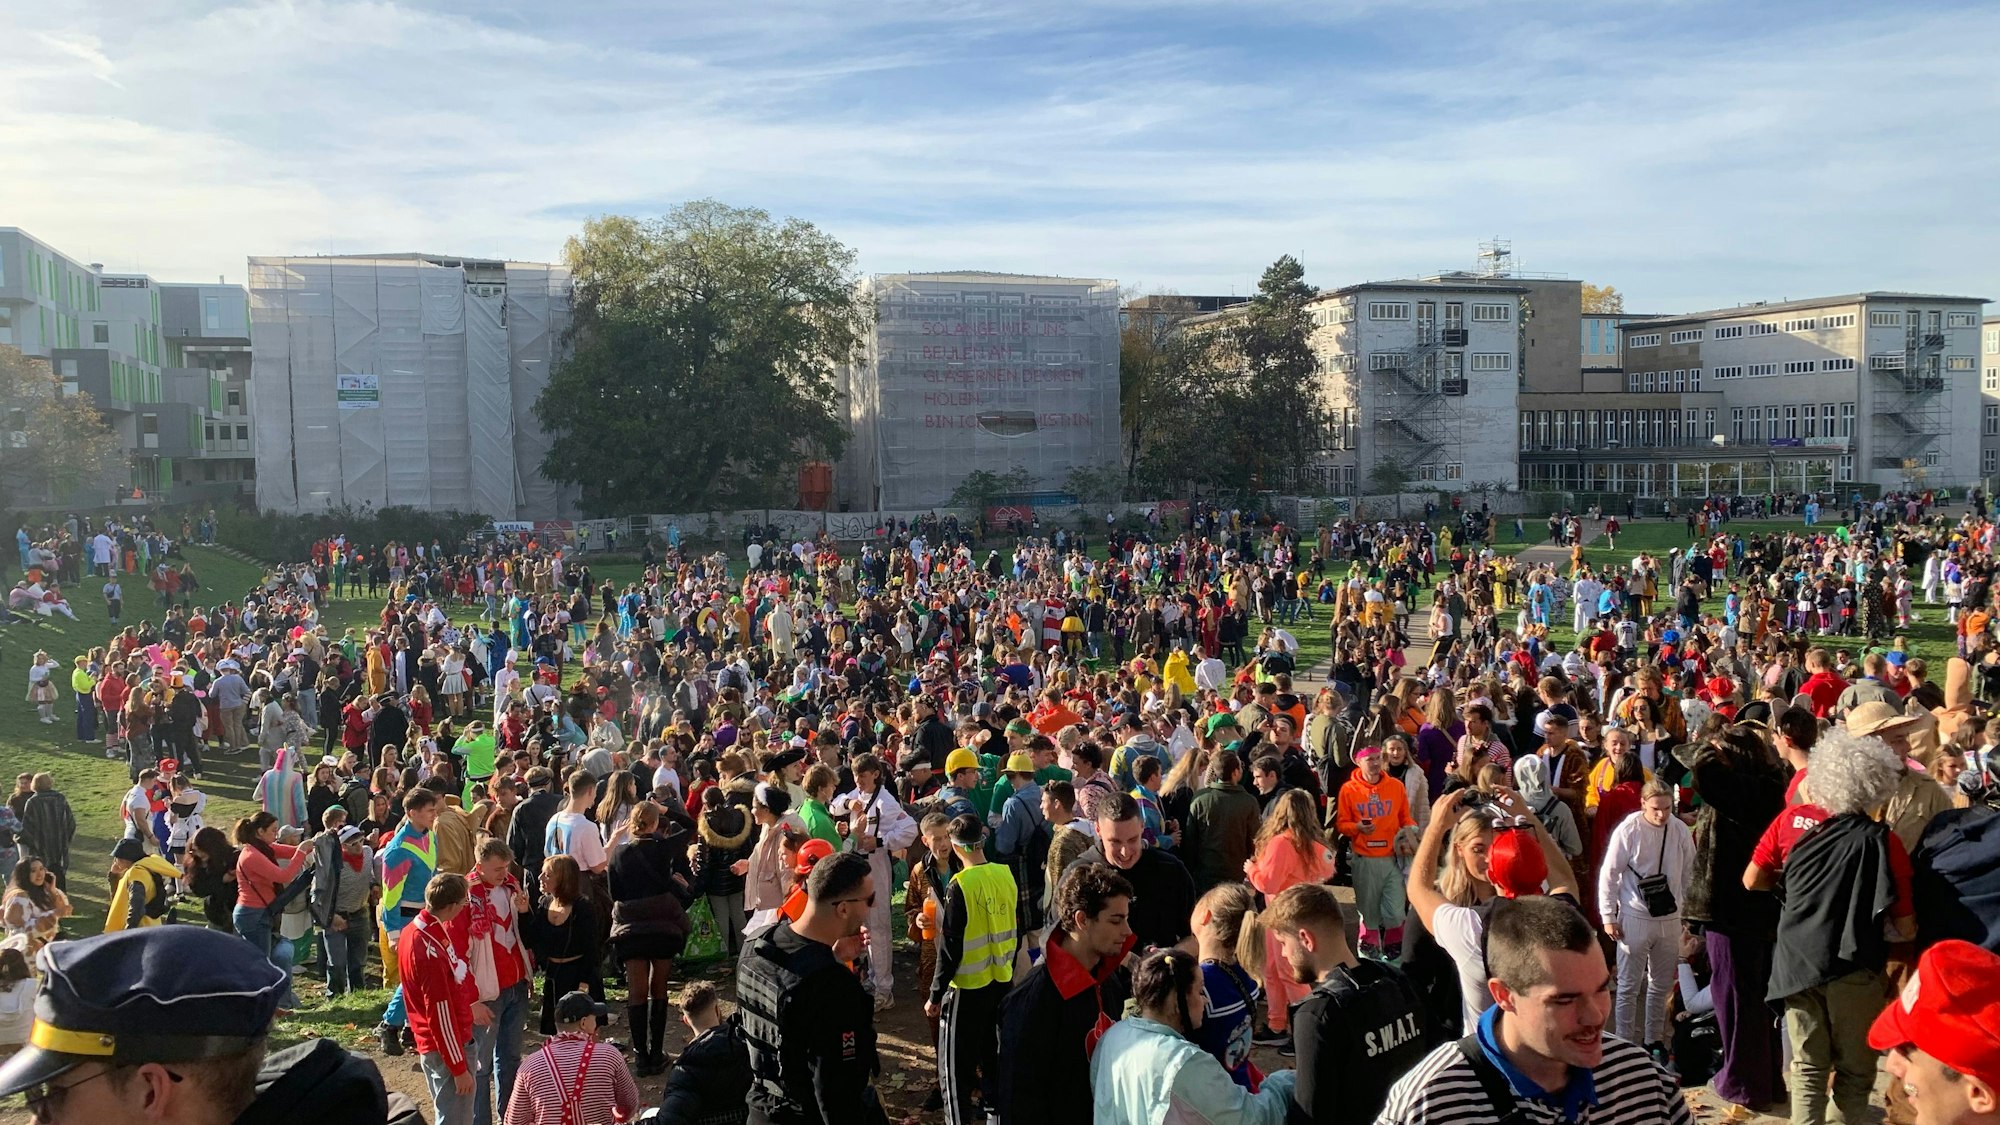 Hunderte junge Leute feiern bunt kostümiert am Elften Elften 2022 auf der Uniwiese. Nach den Feierlichkeiten war die Wiese stark verschmutzt. Im Hintergrund ist die Universität zu Köln zu sehen.